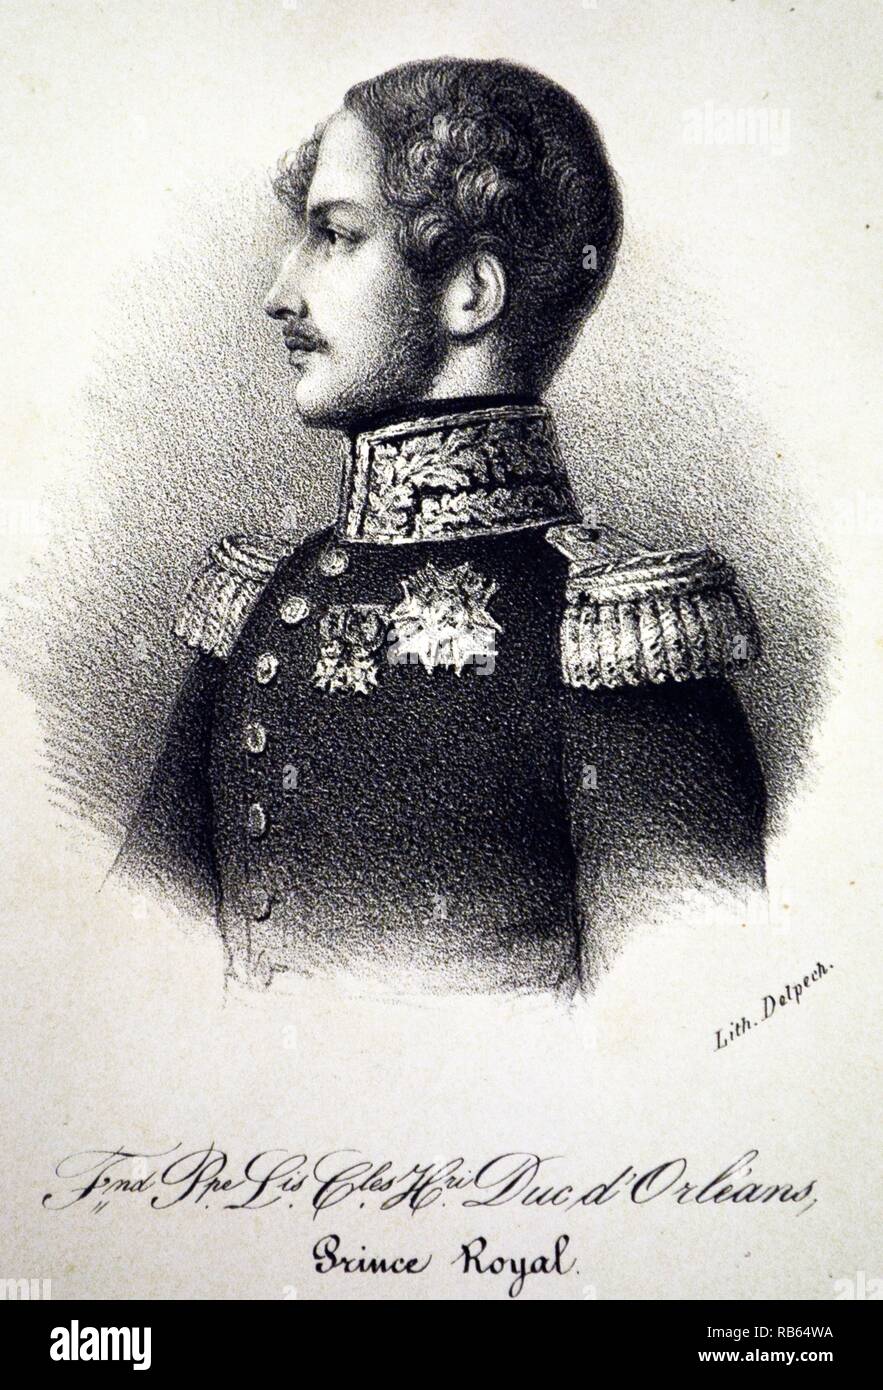 Ferdinand Philippe von Orleans, Prince Royal (1810-1842), ältester Sohn von Louis Philippe i. von Frankreich. Lithograh, Paris, c1840. Stockfoto